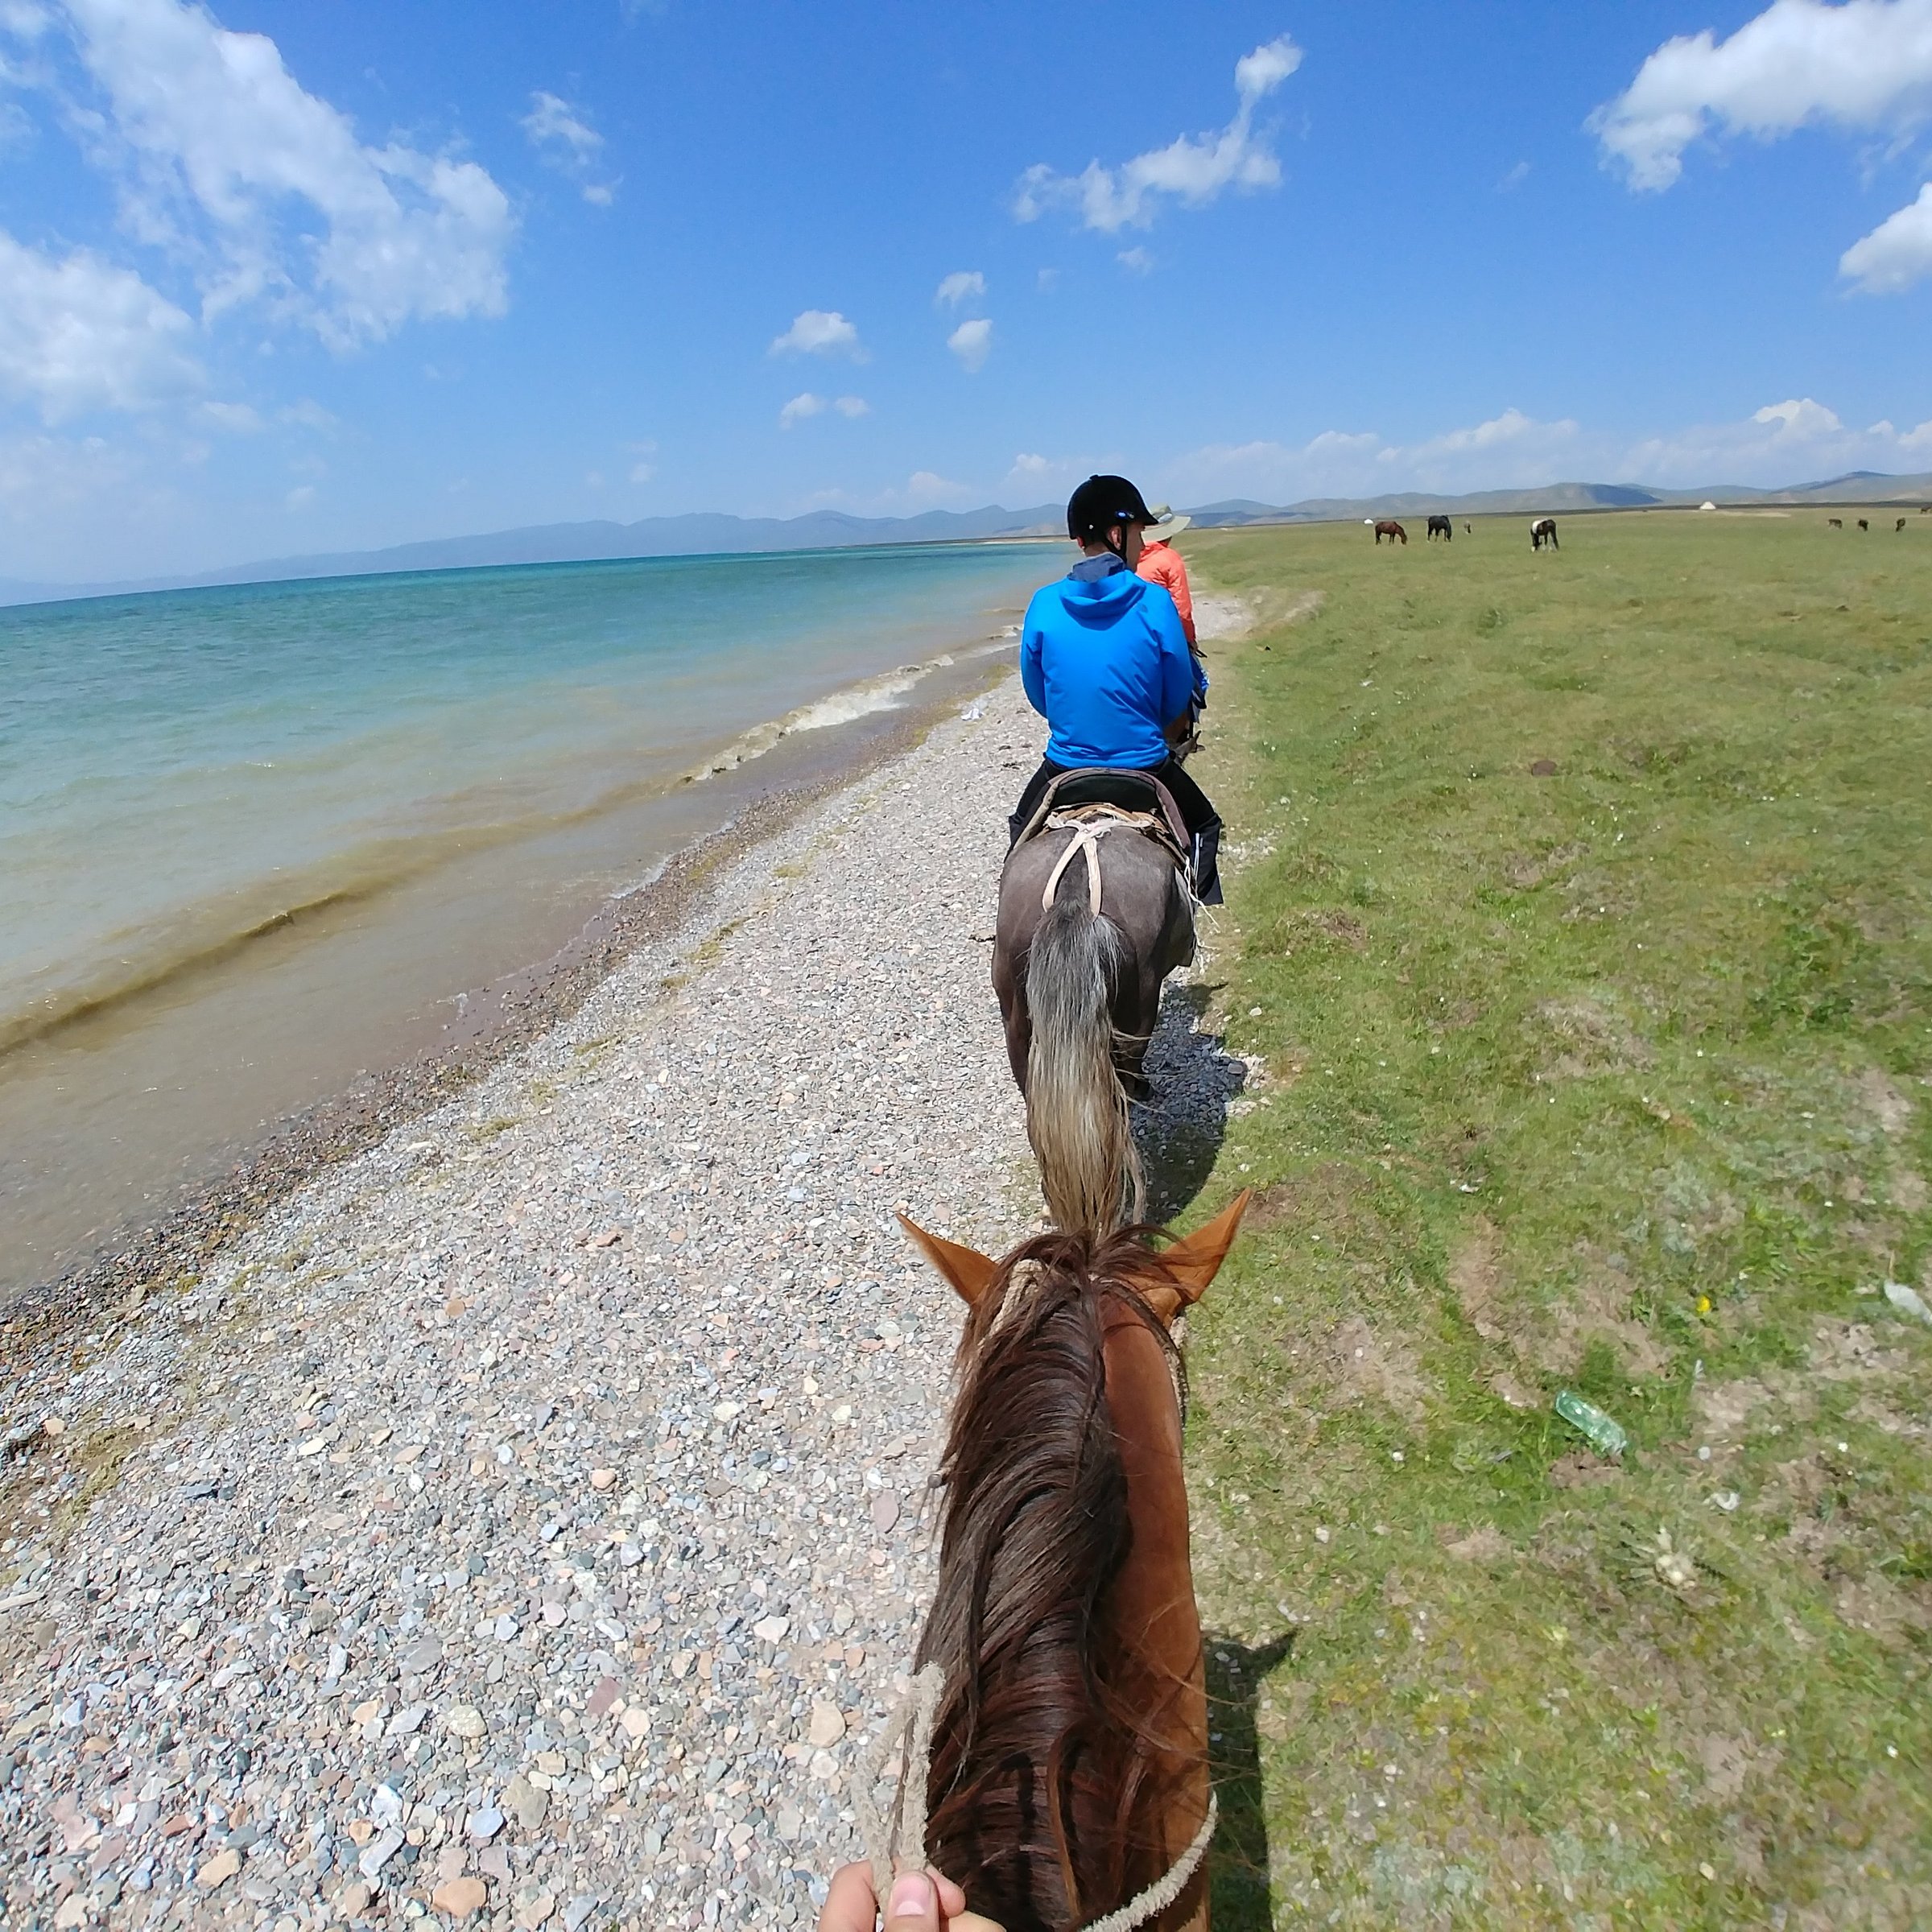 kyrgyz riders travel company kochkor reviews